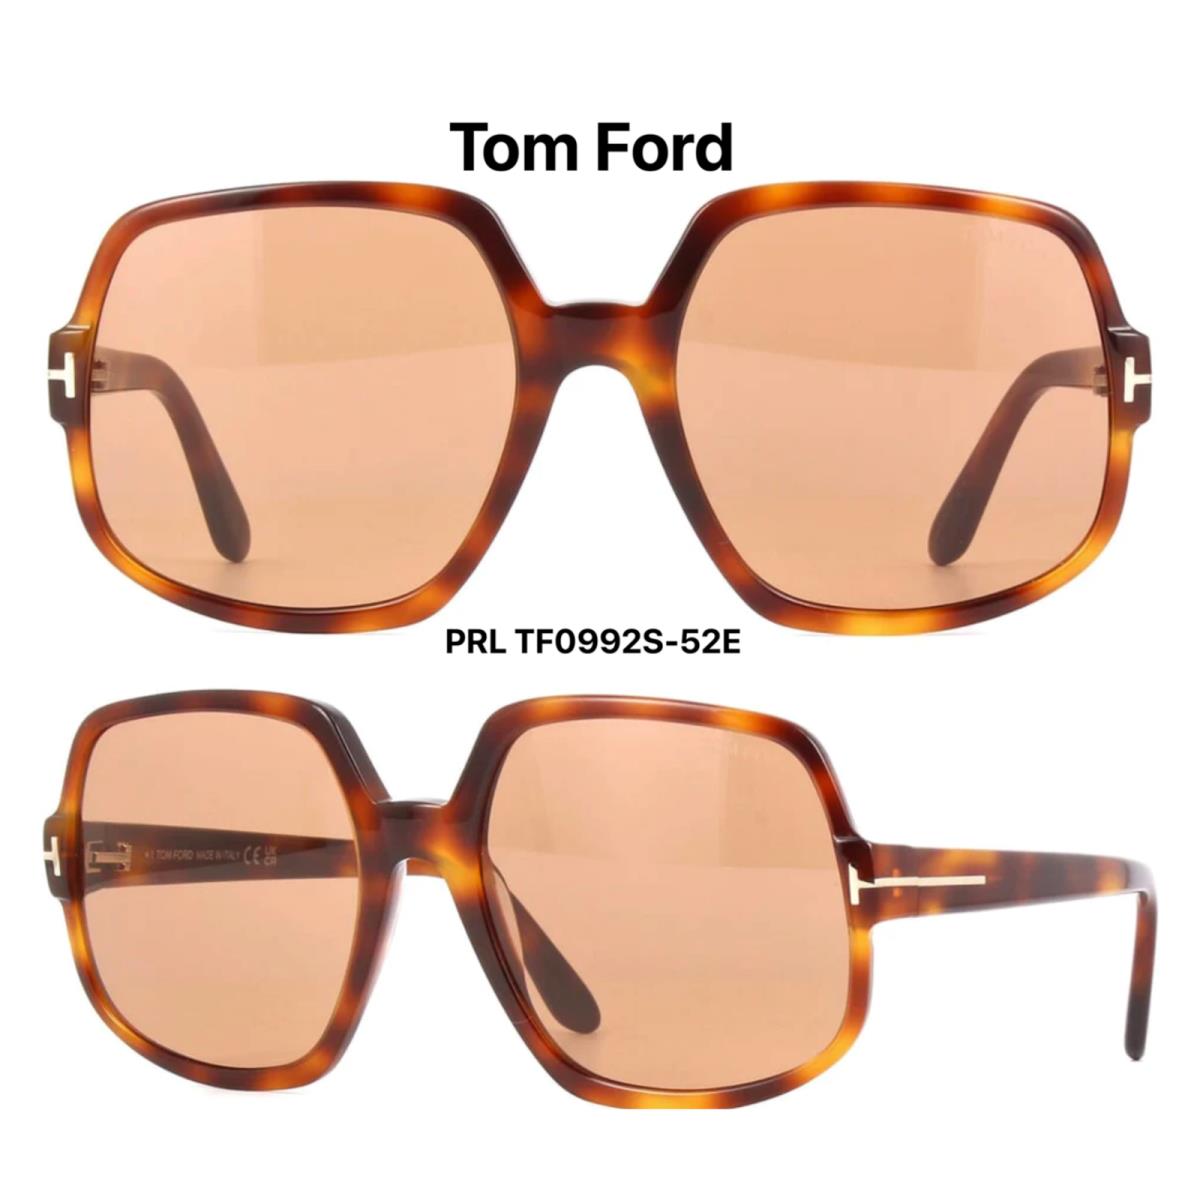 Tom Ford TF 992 52E Delphine-02 Sunglasses Havana Brown FT 992 52E - Frame: Havana, Lens: Brown